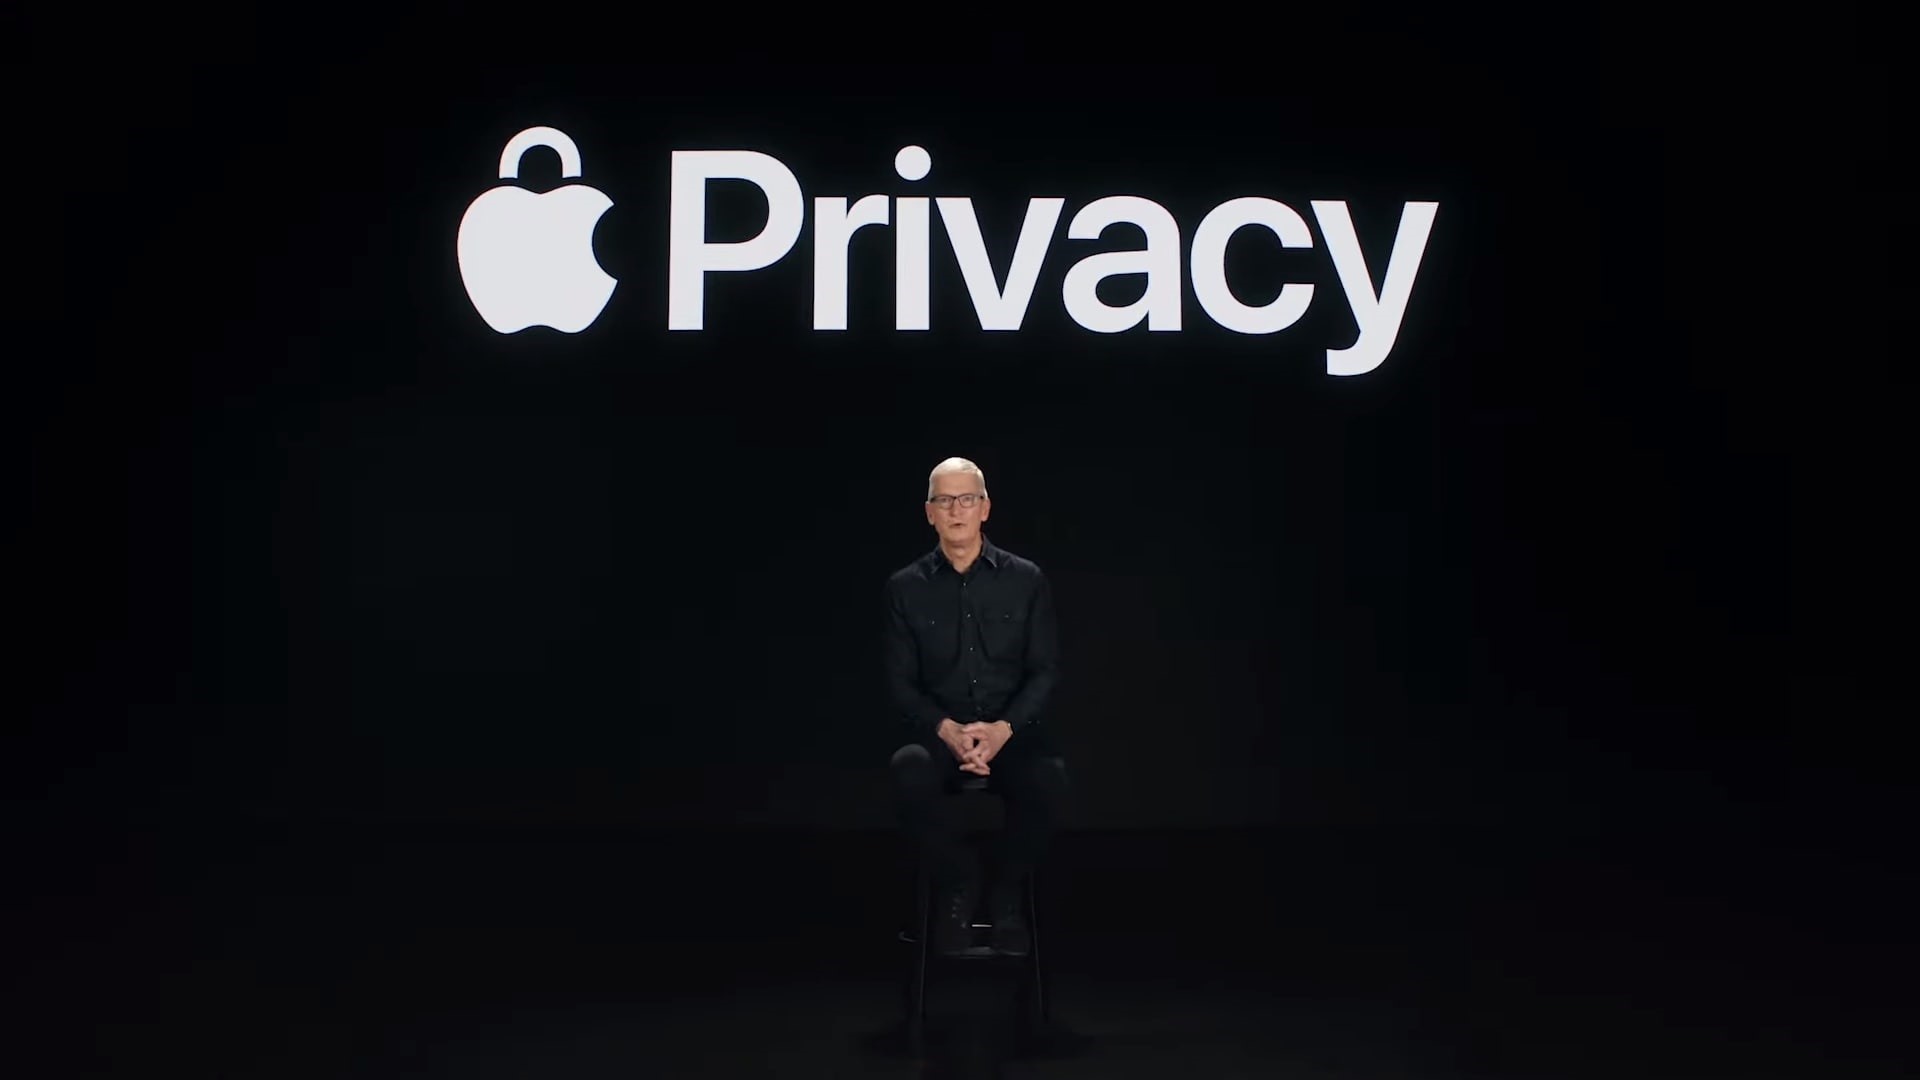 15-06-2021 El CEO de Apple, Tim Cook, habla sobre las herramientas de privacidad de iOS 15 y iPadOS 15 en el Steve Jobs Theater
POLITICA 
APPLE
